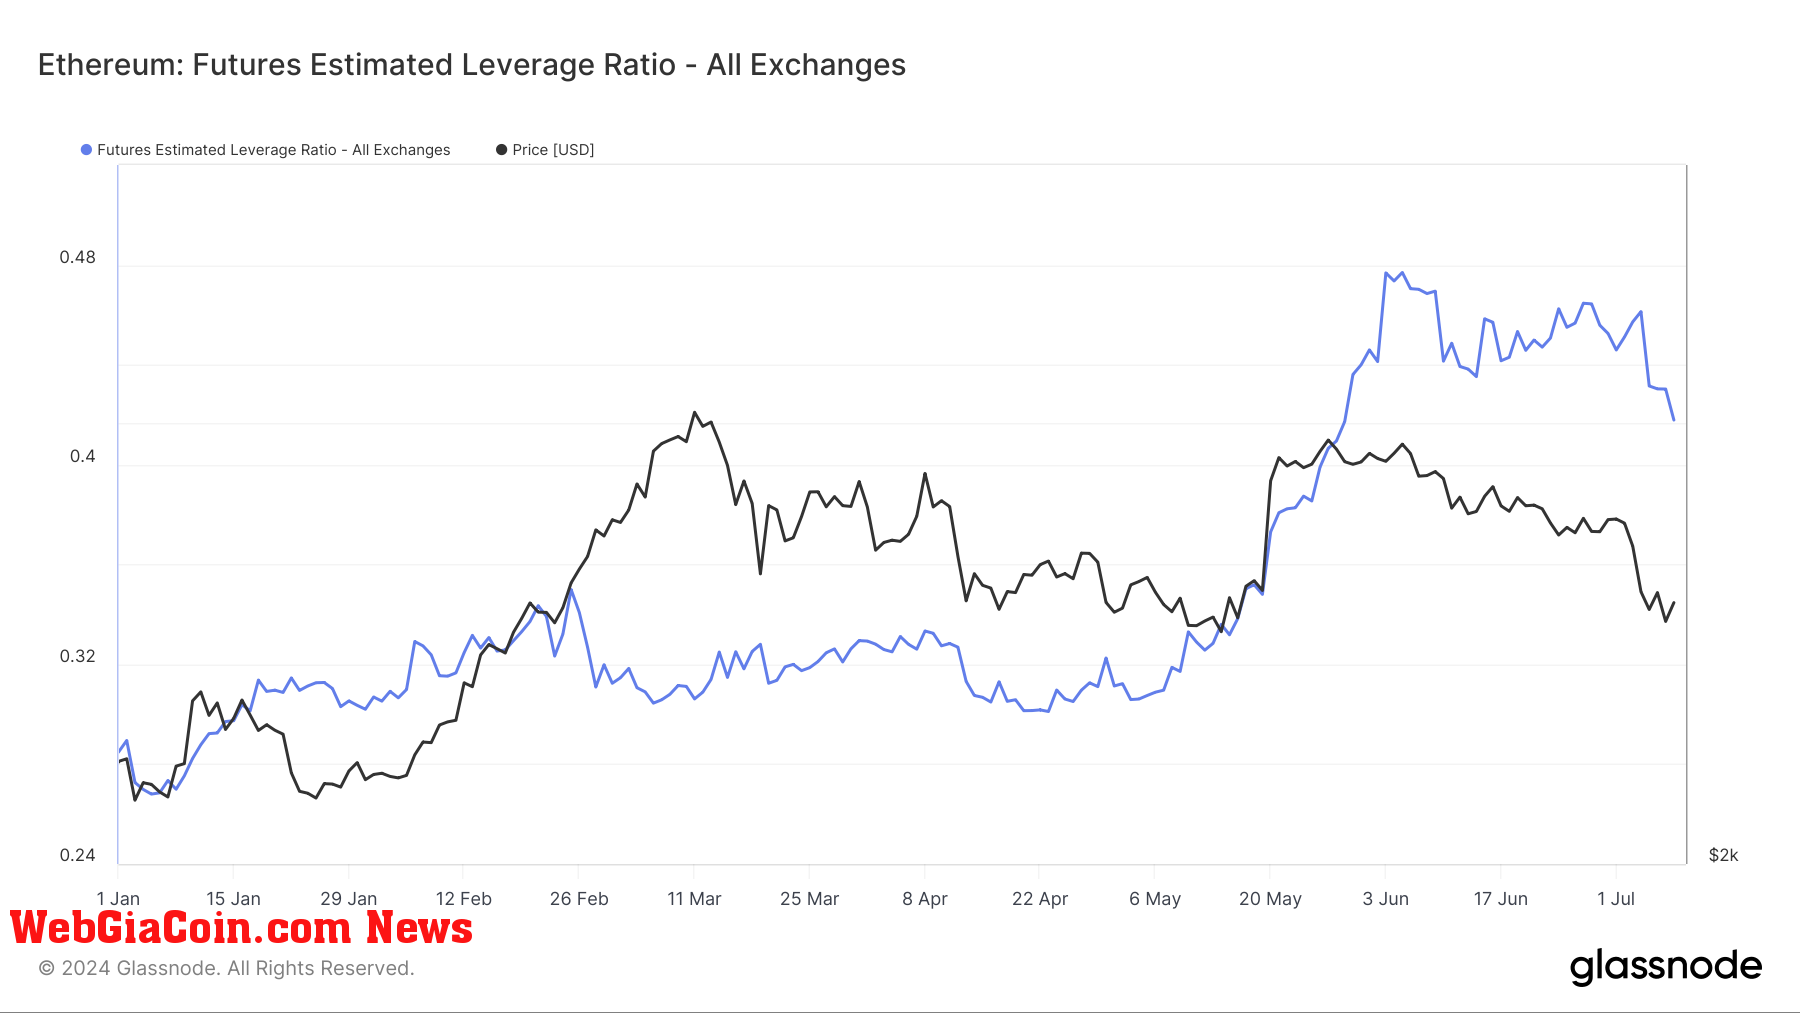 Tỷ lệ đòn bẩy Ethereum đạt đỉnh 0,48 trong bối cảnh biến động giá, xu hướng giảm và suy thoái